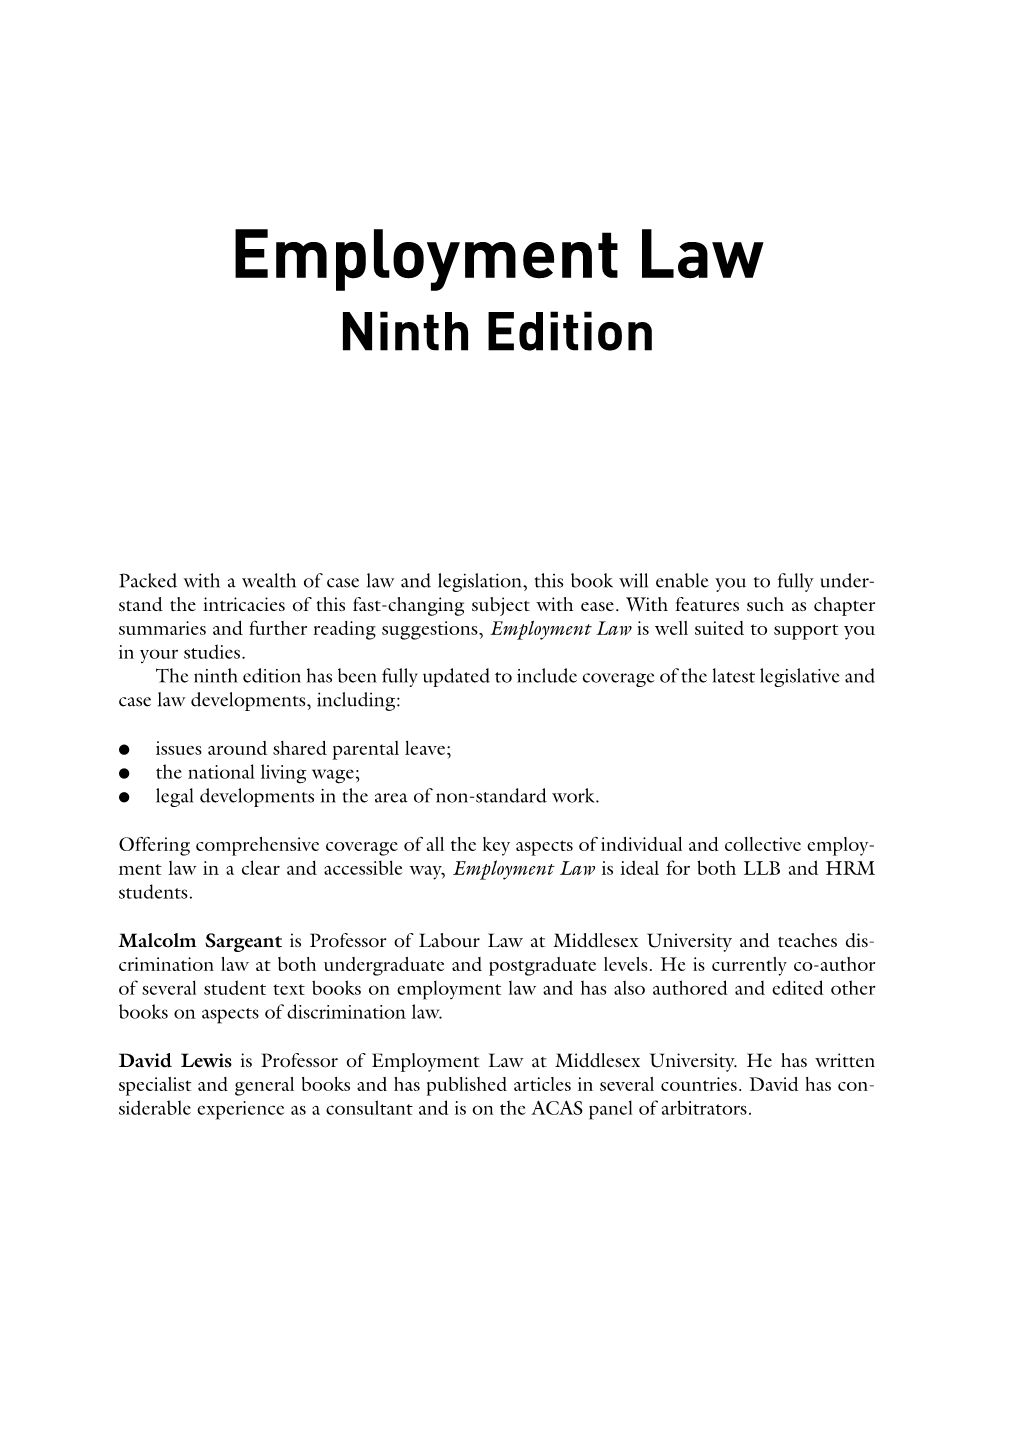 Employment Law Ninth Edition